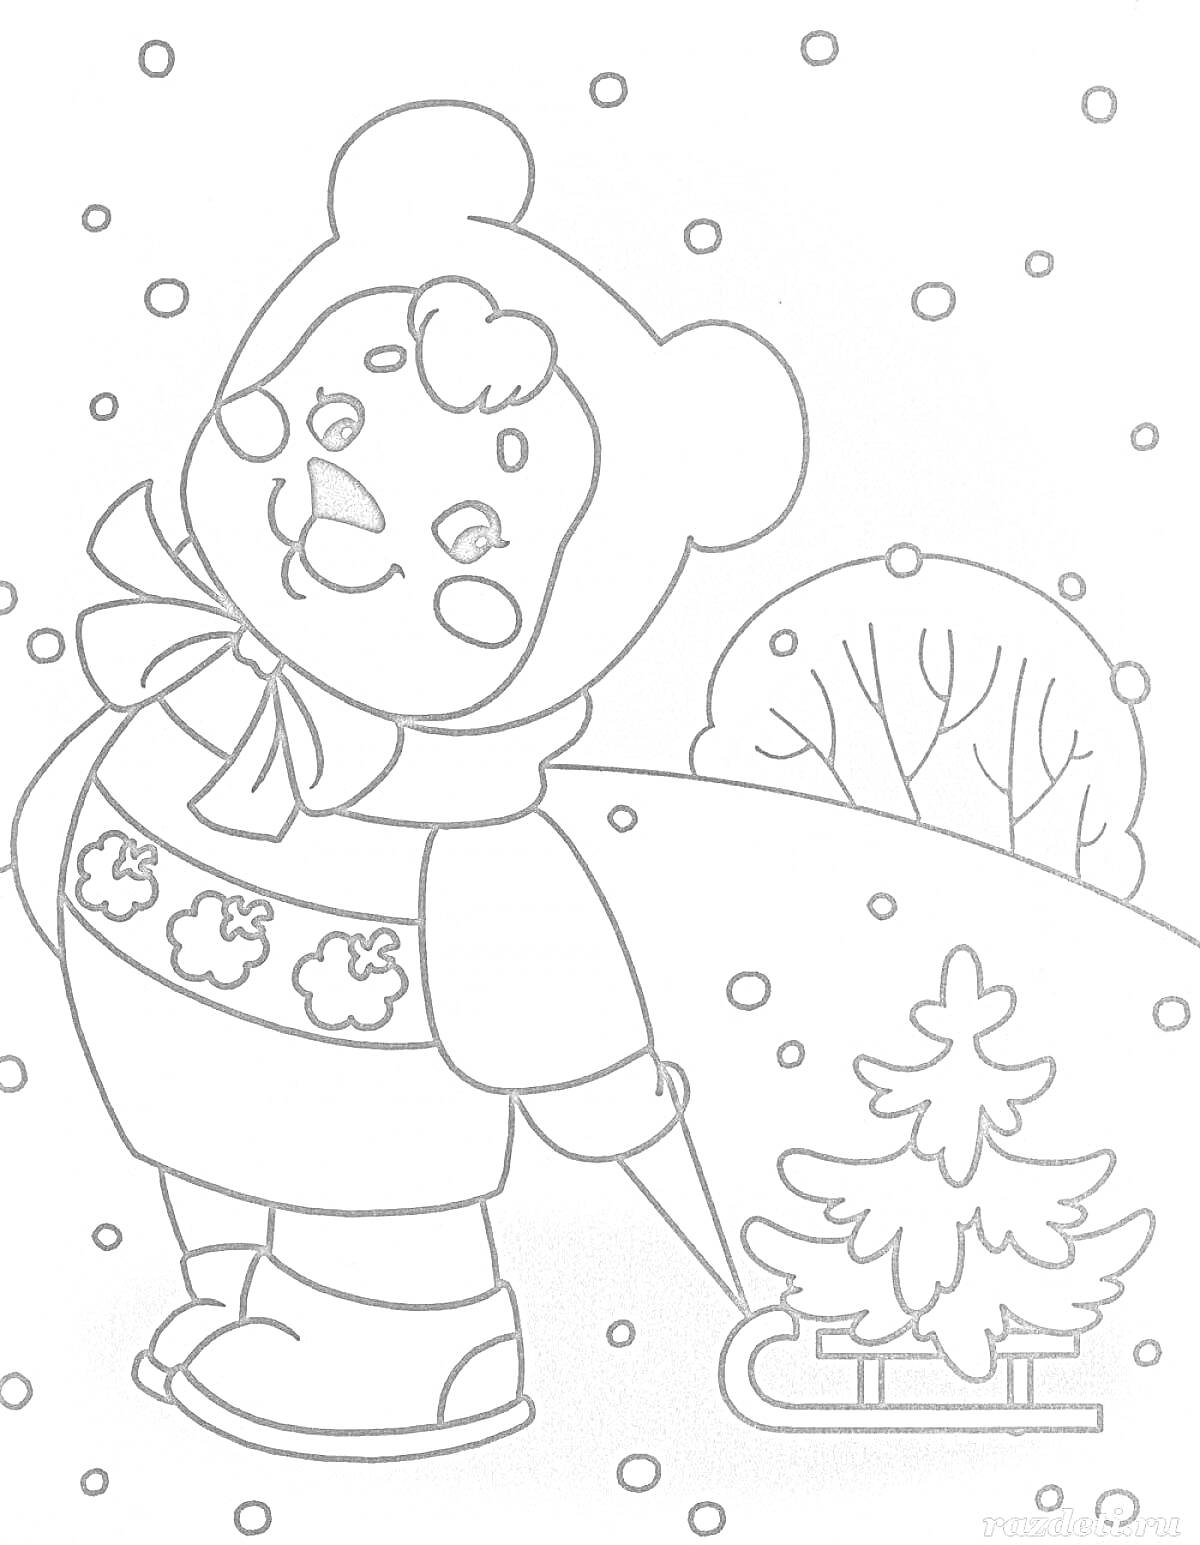 Раскраска Медвежонок в зимней одежде с елочкой на санках на фоне пейзажа